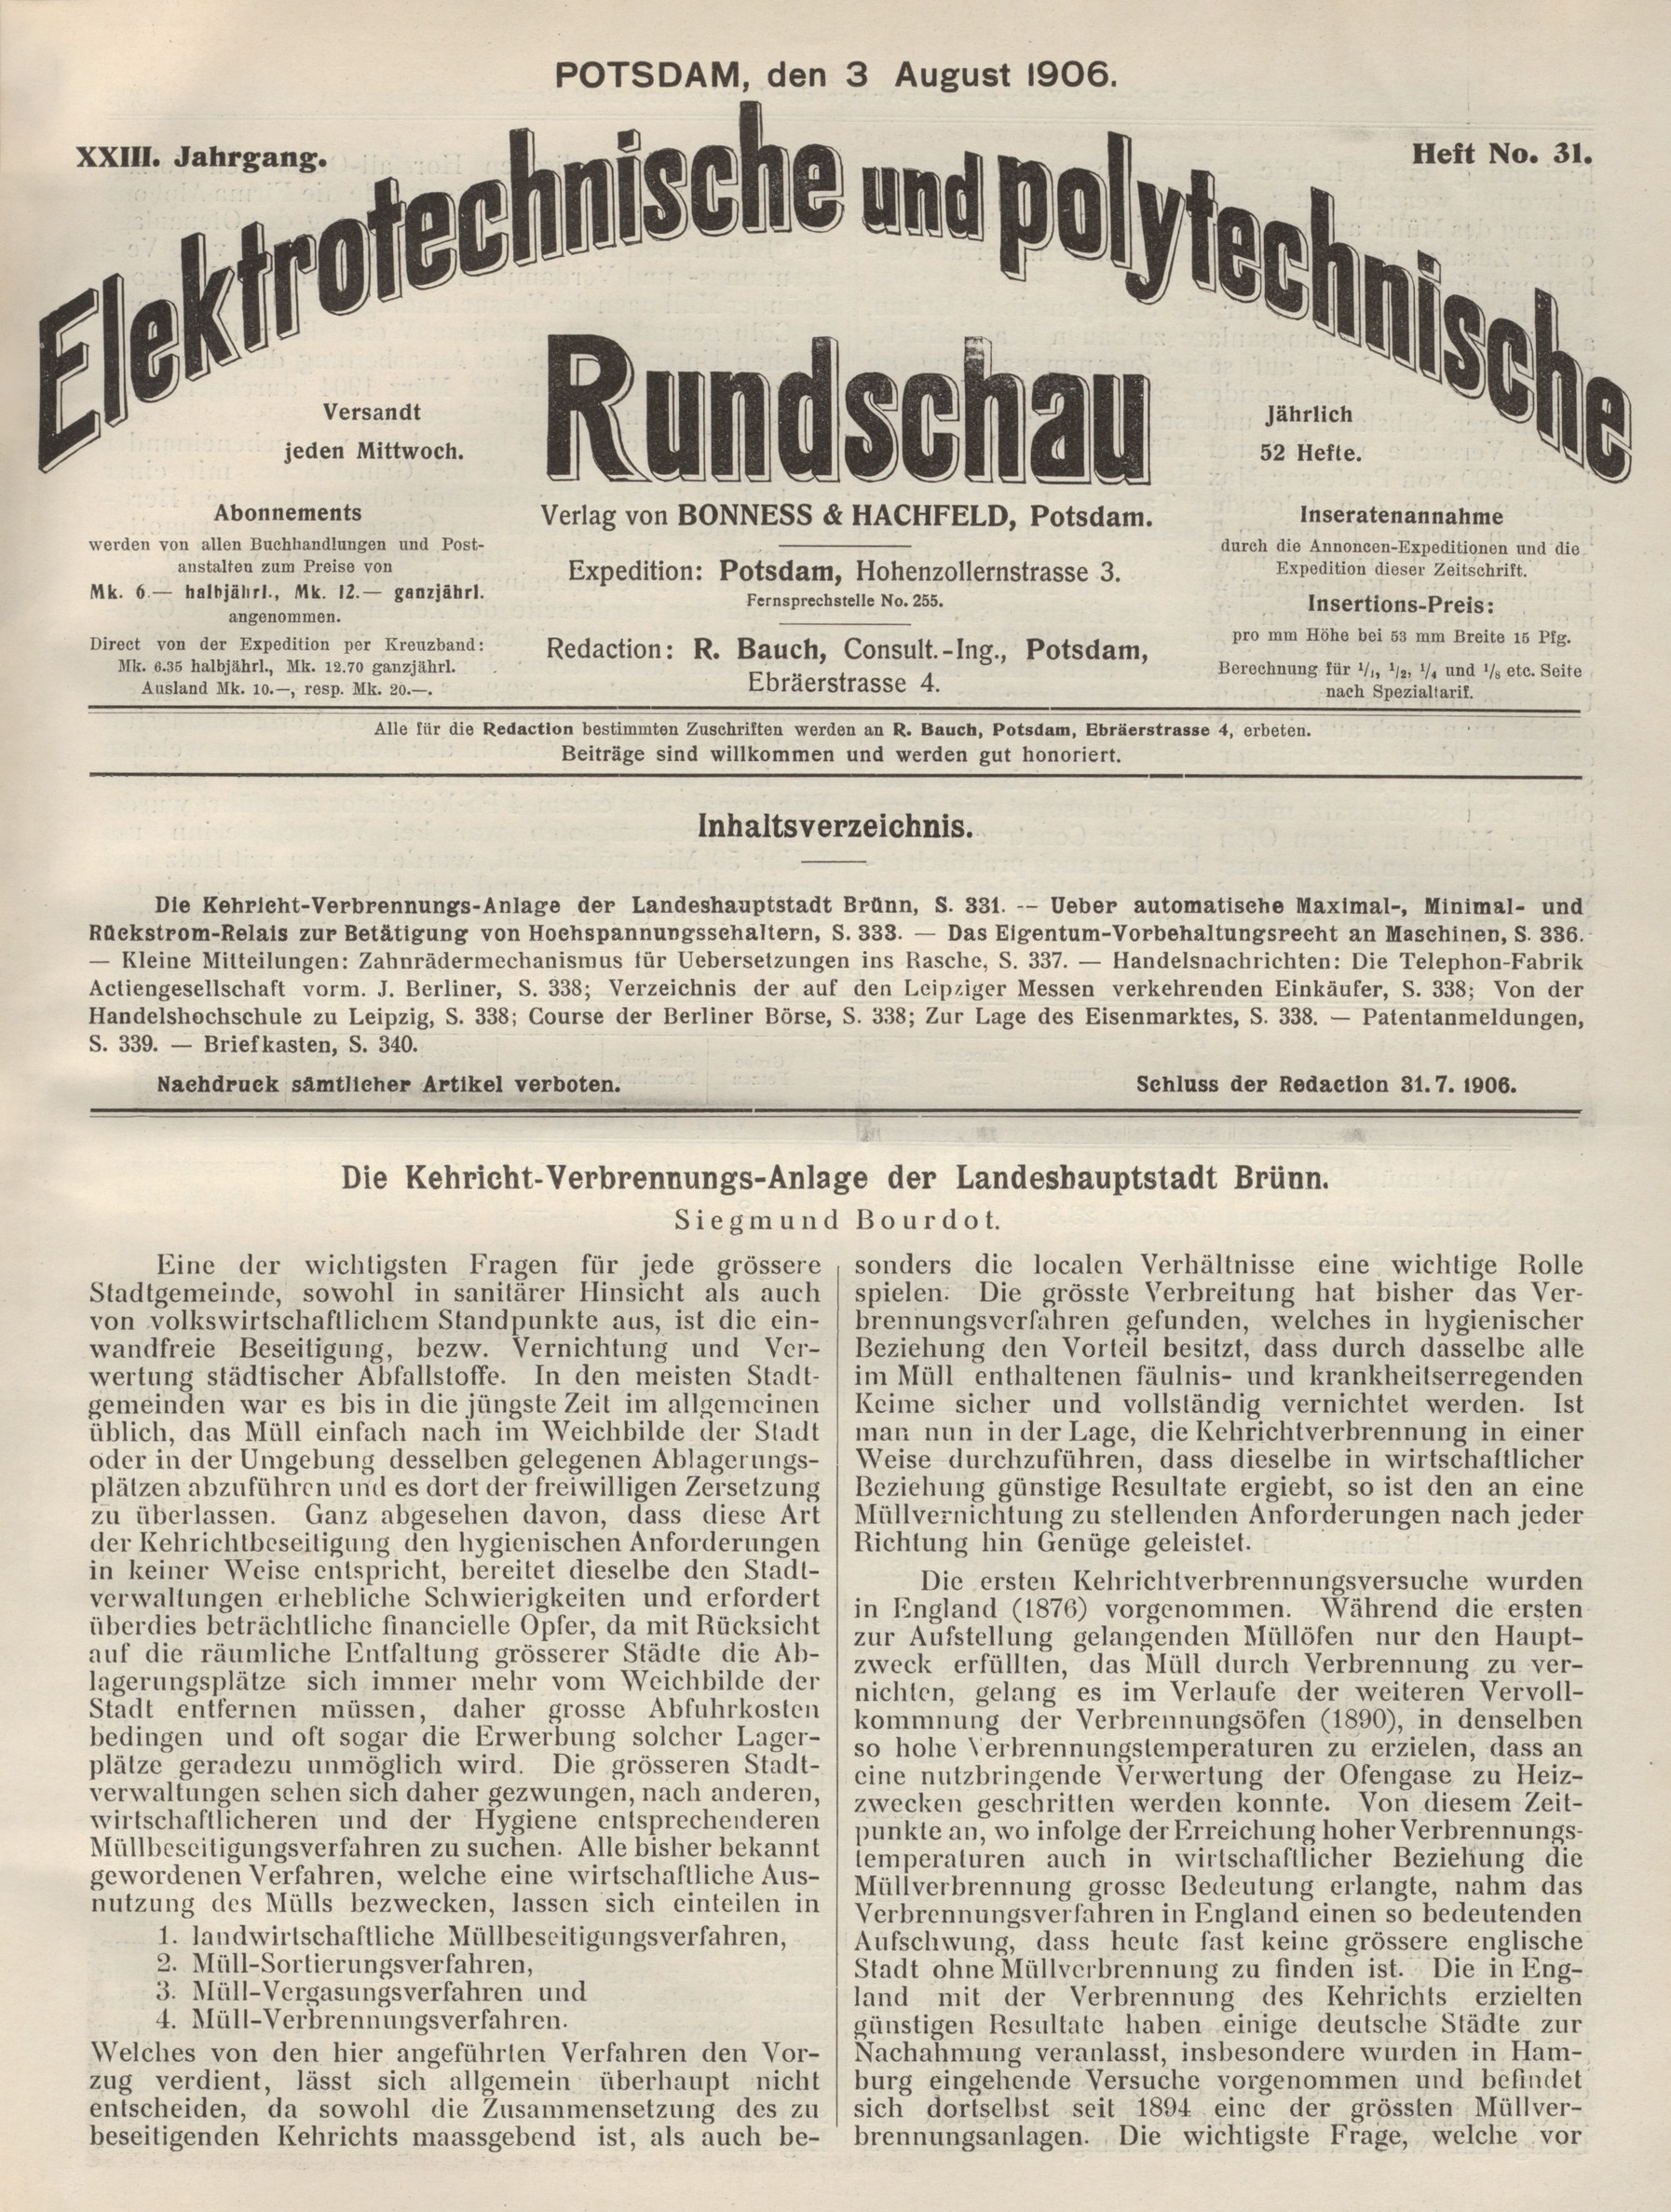 Elektrotechnische und polytechnische Rundschau, XXIII. Jahrgang, Heft No. 31